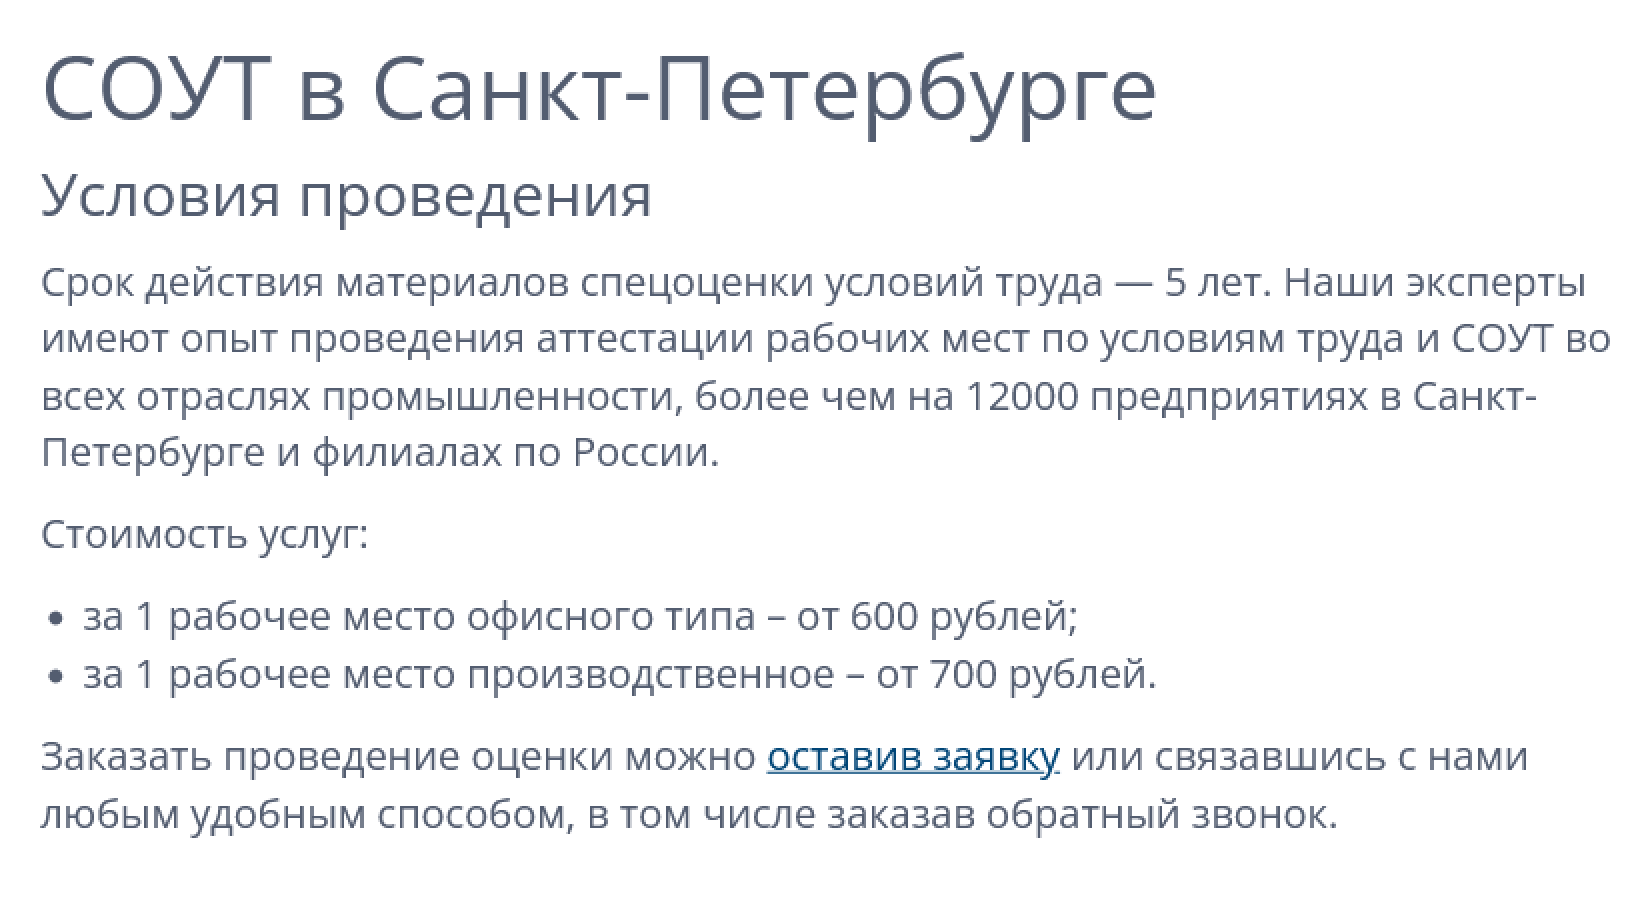 Цены на проведение СОУТ в Санкт-Петербургском центре экспертизы условий труда